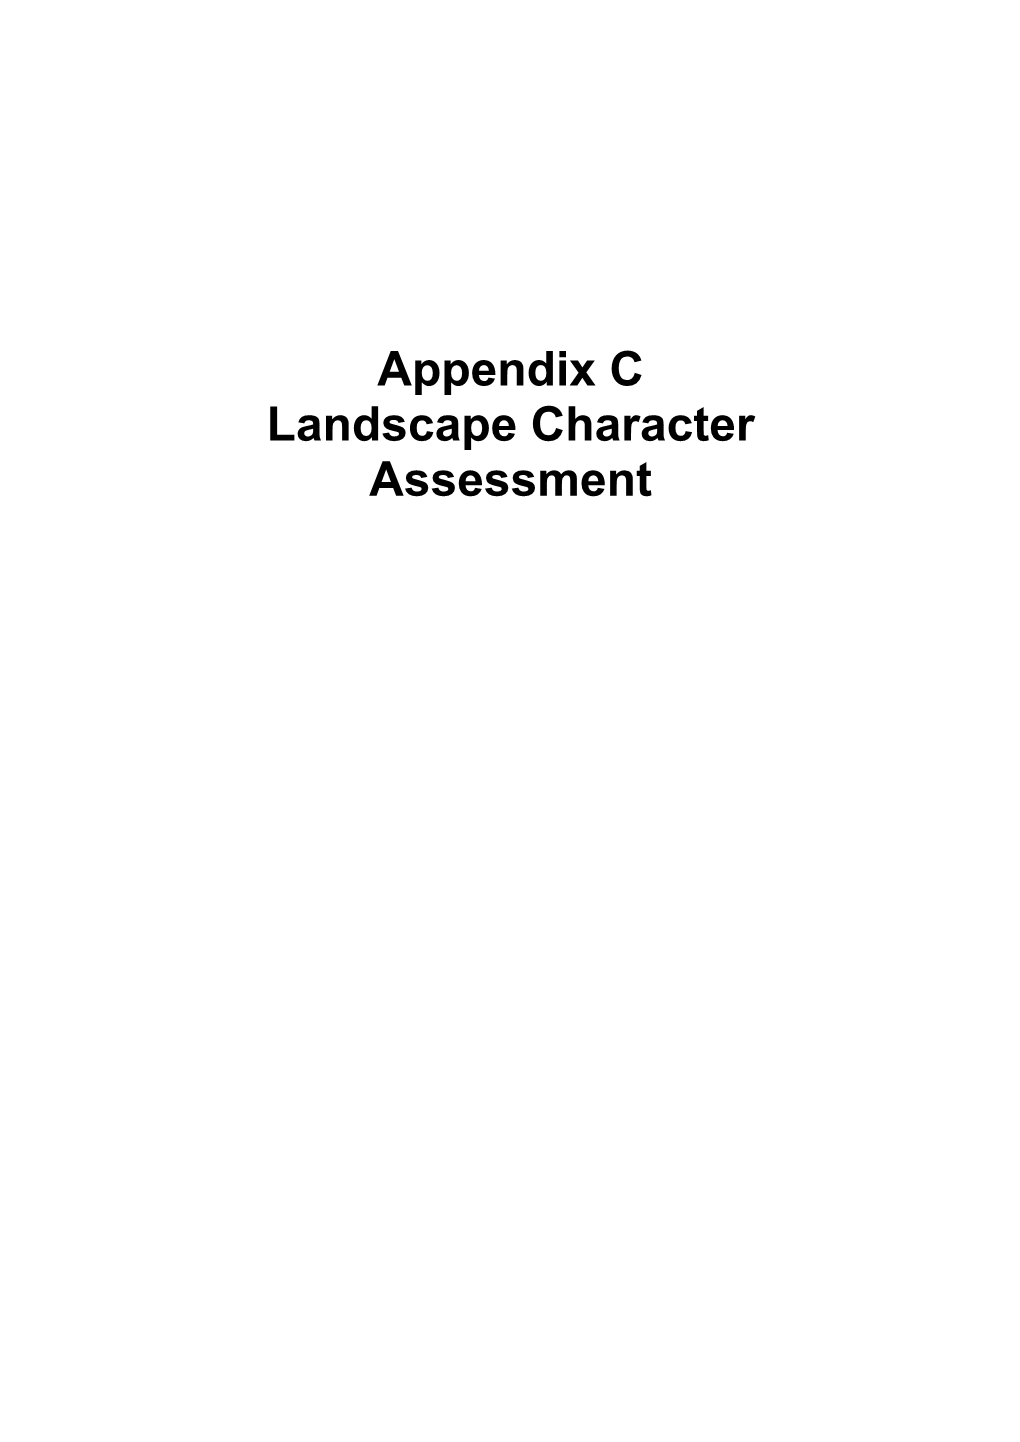 Appendix C Landscape Character Assessment NEWQUAY TOWN FRINGE DESCRIPTION